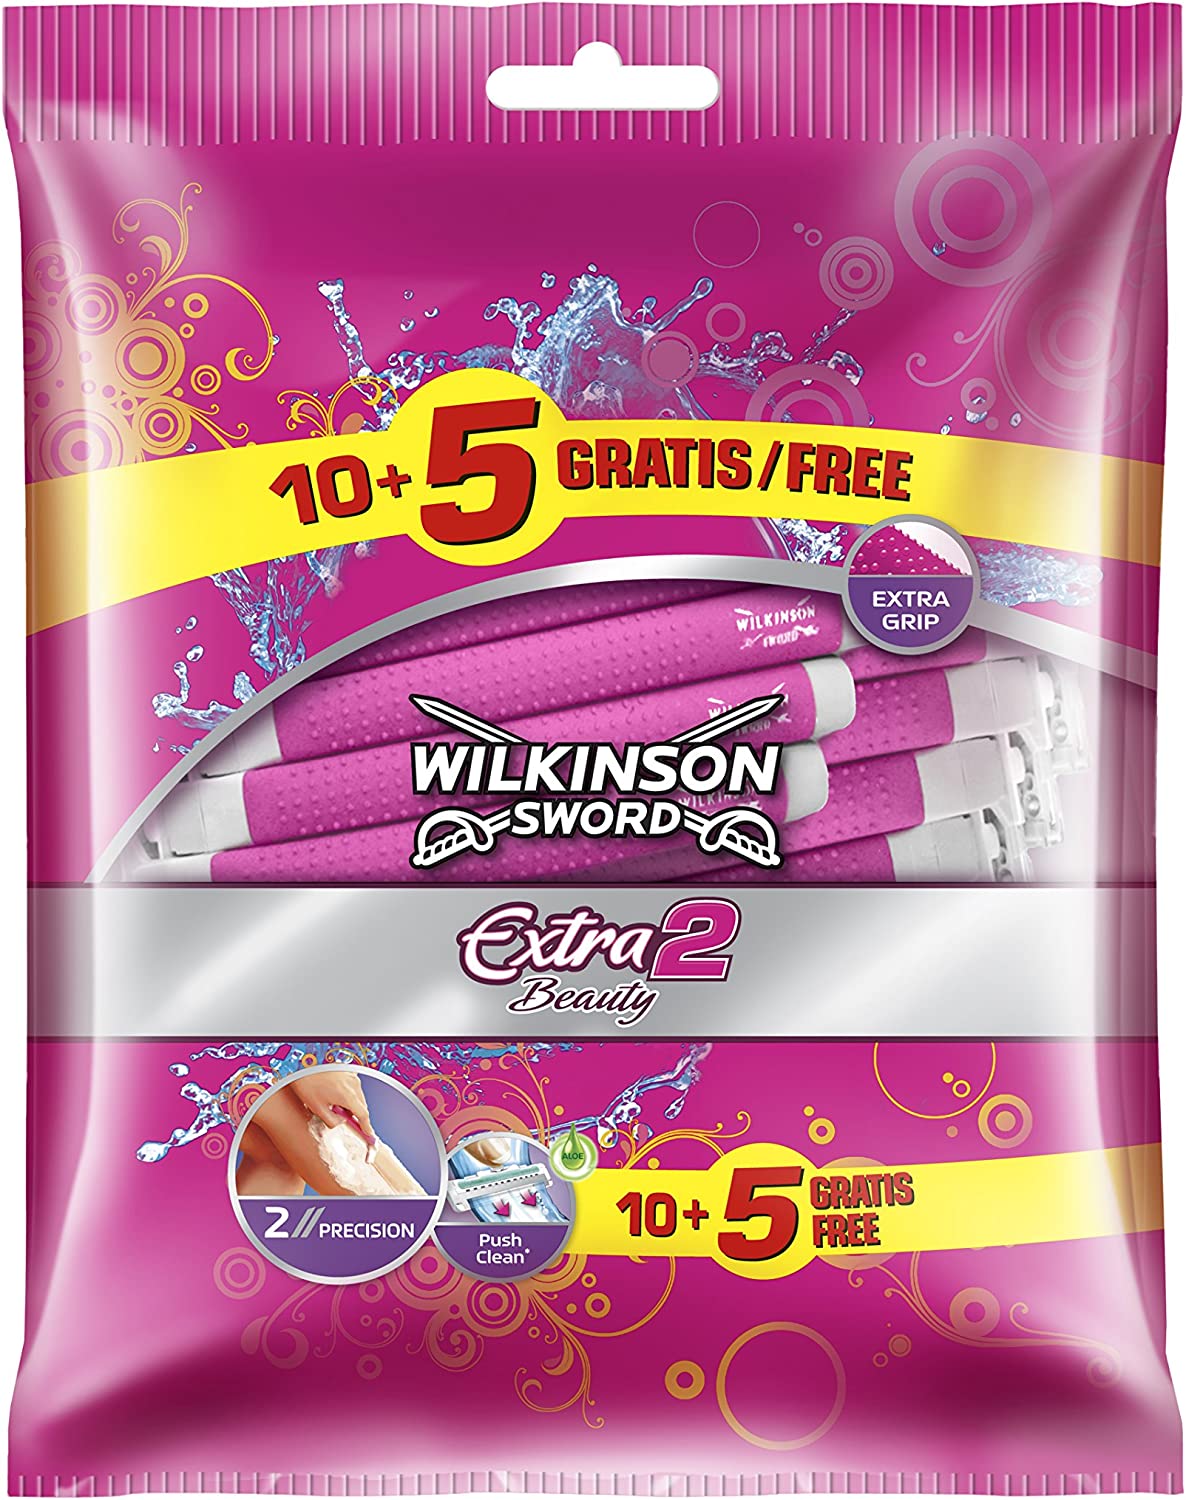 Wilkinson Extra 2 Beauty wegwerpmesjes - 15 stuks